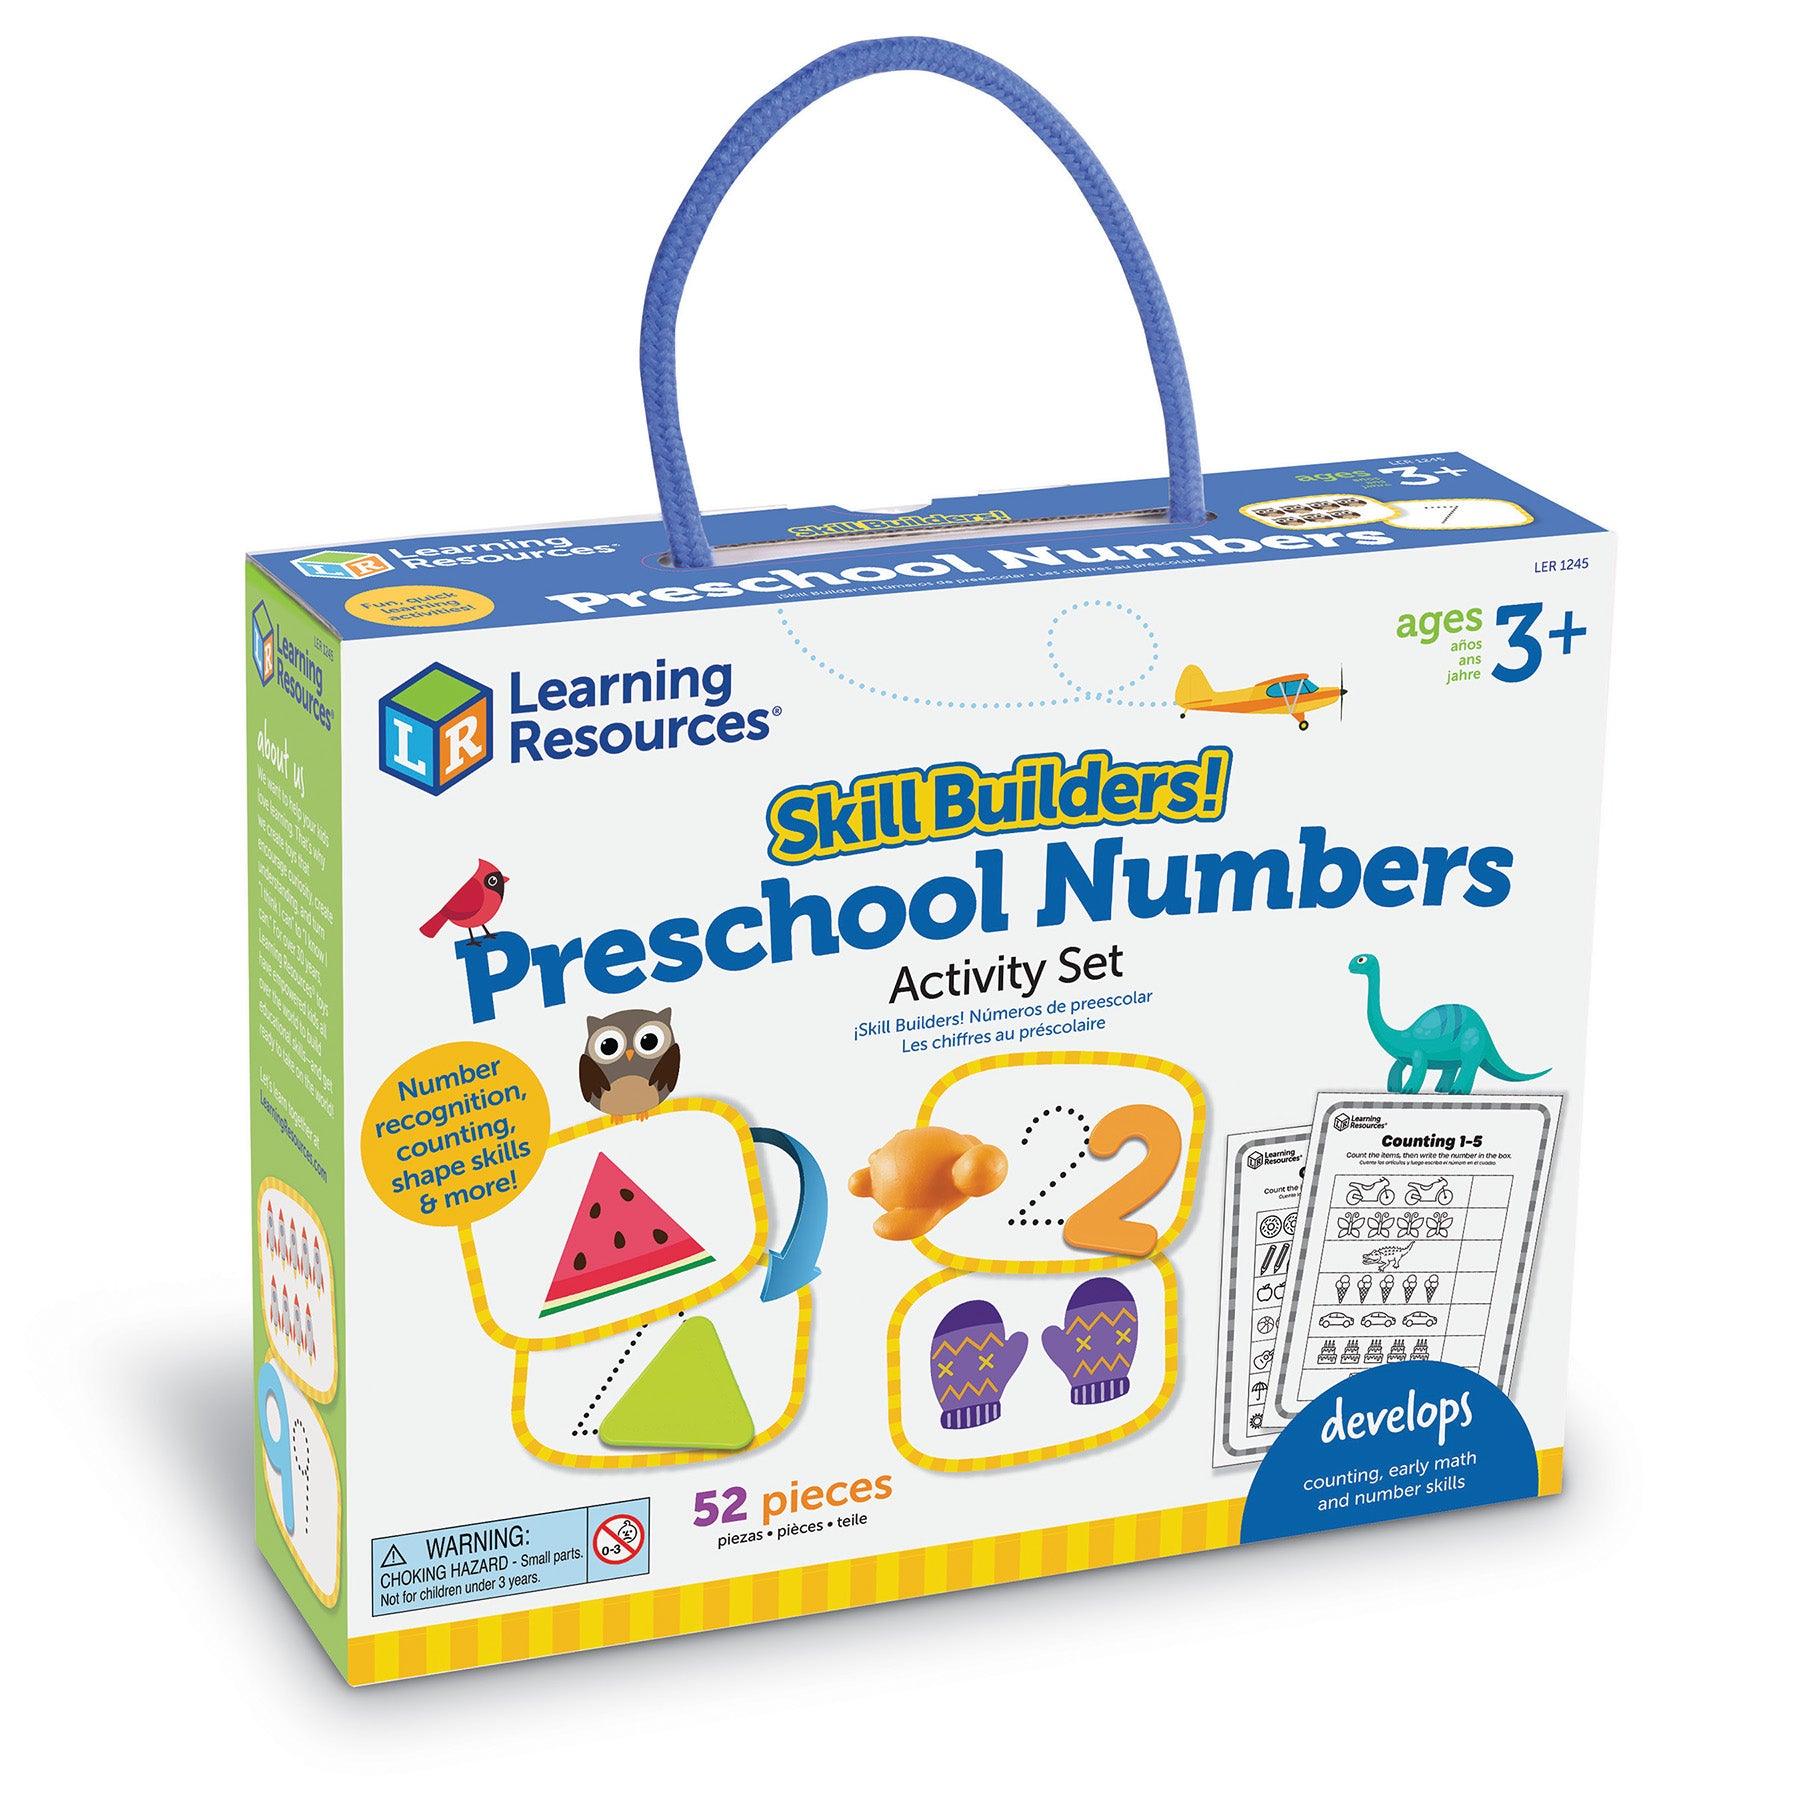 Skill Builders! Preschool Numbers - Loomini